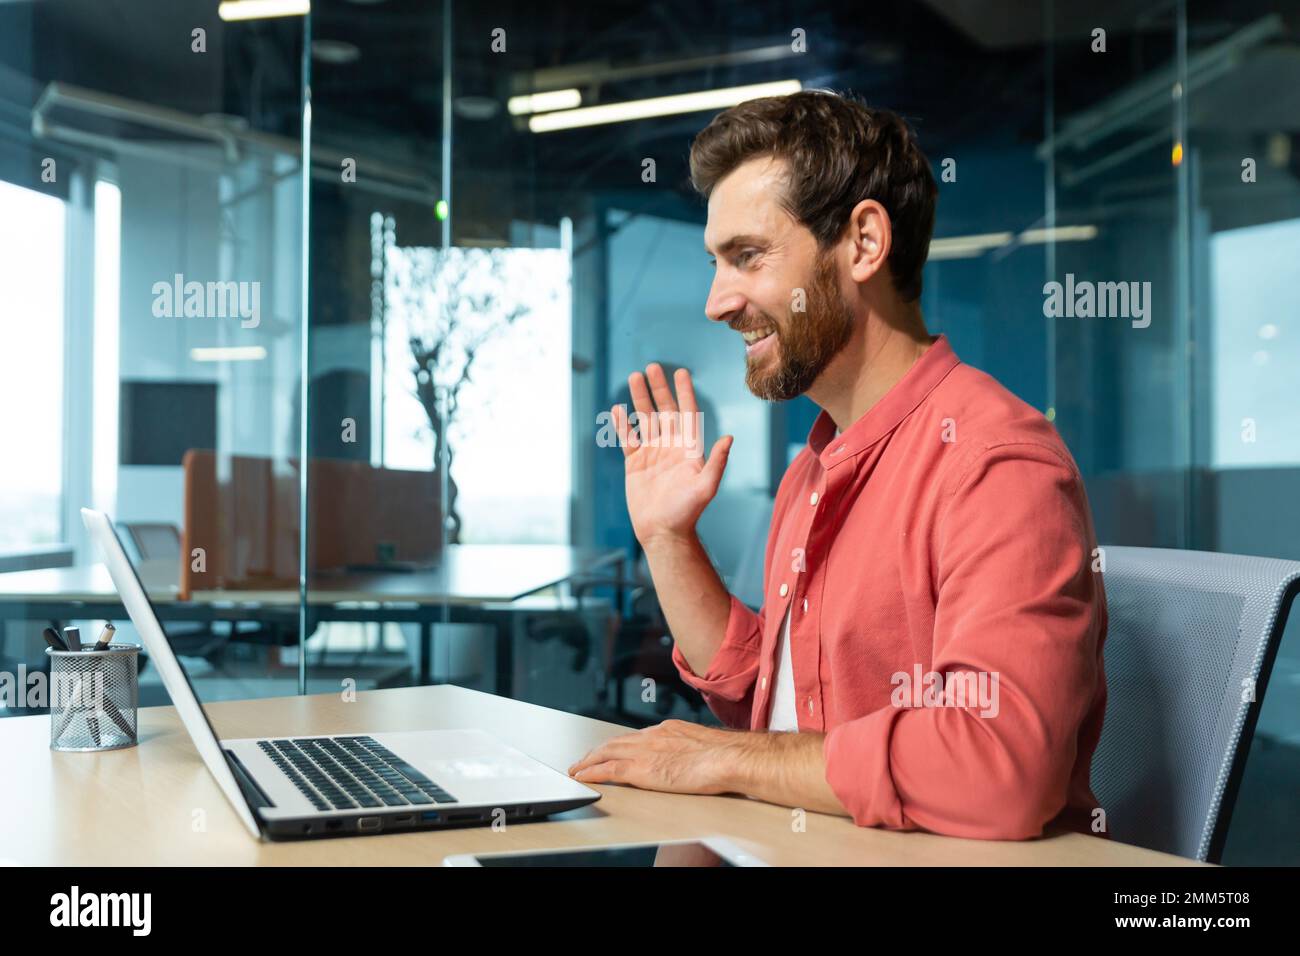 Porträt eines jungen Mannes in einem roten Hemd. Im Büro am Tisch sitzen, an einem Laptop arbeiten, per Videoanruf kommunizieren, winken, lächeln. Stockfoto